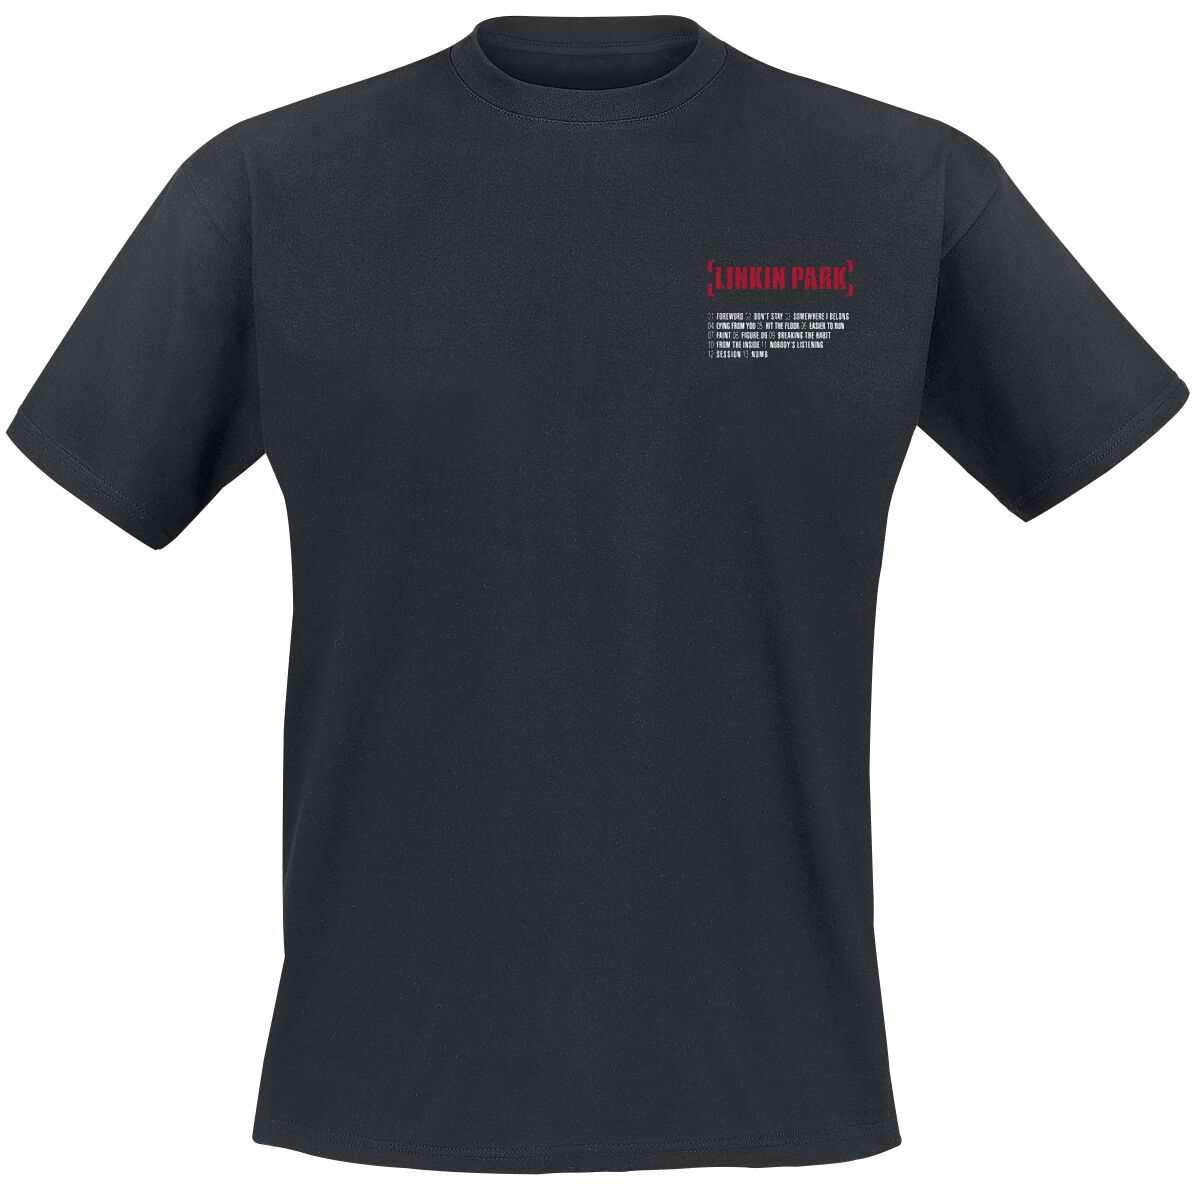 Linkin Park T-Shirt - Meteora Red - S bis XXL - für Männer - Größe XL - schwarz  - EMP exklusives Merchandise!